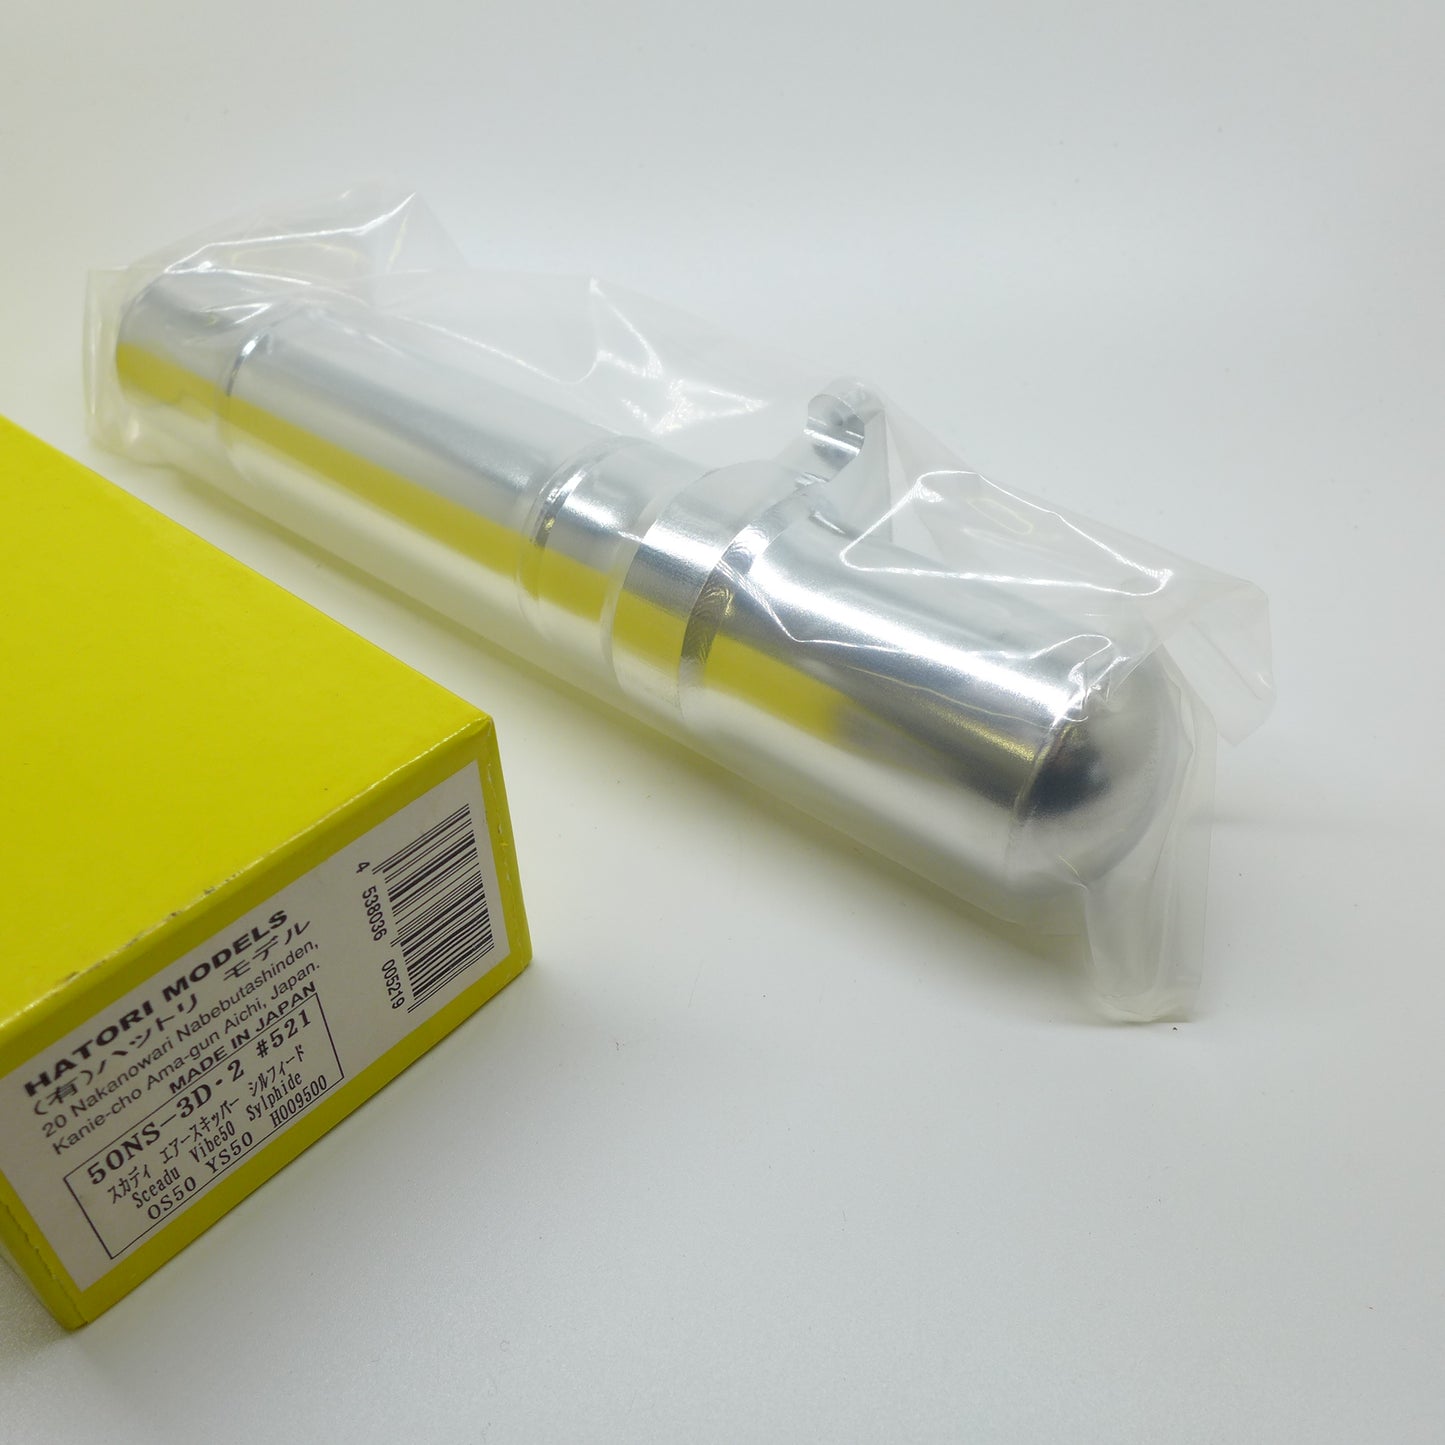 Hatori Schalldämpfer / Resorohr #521 50NS-3D 2 OS50 YS50 (Made in Japan)